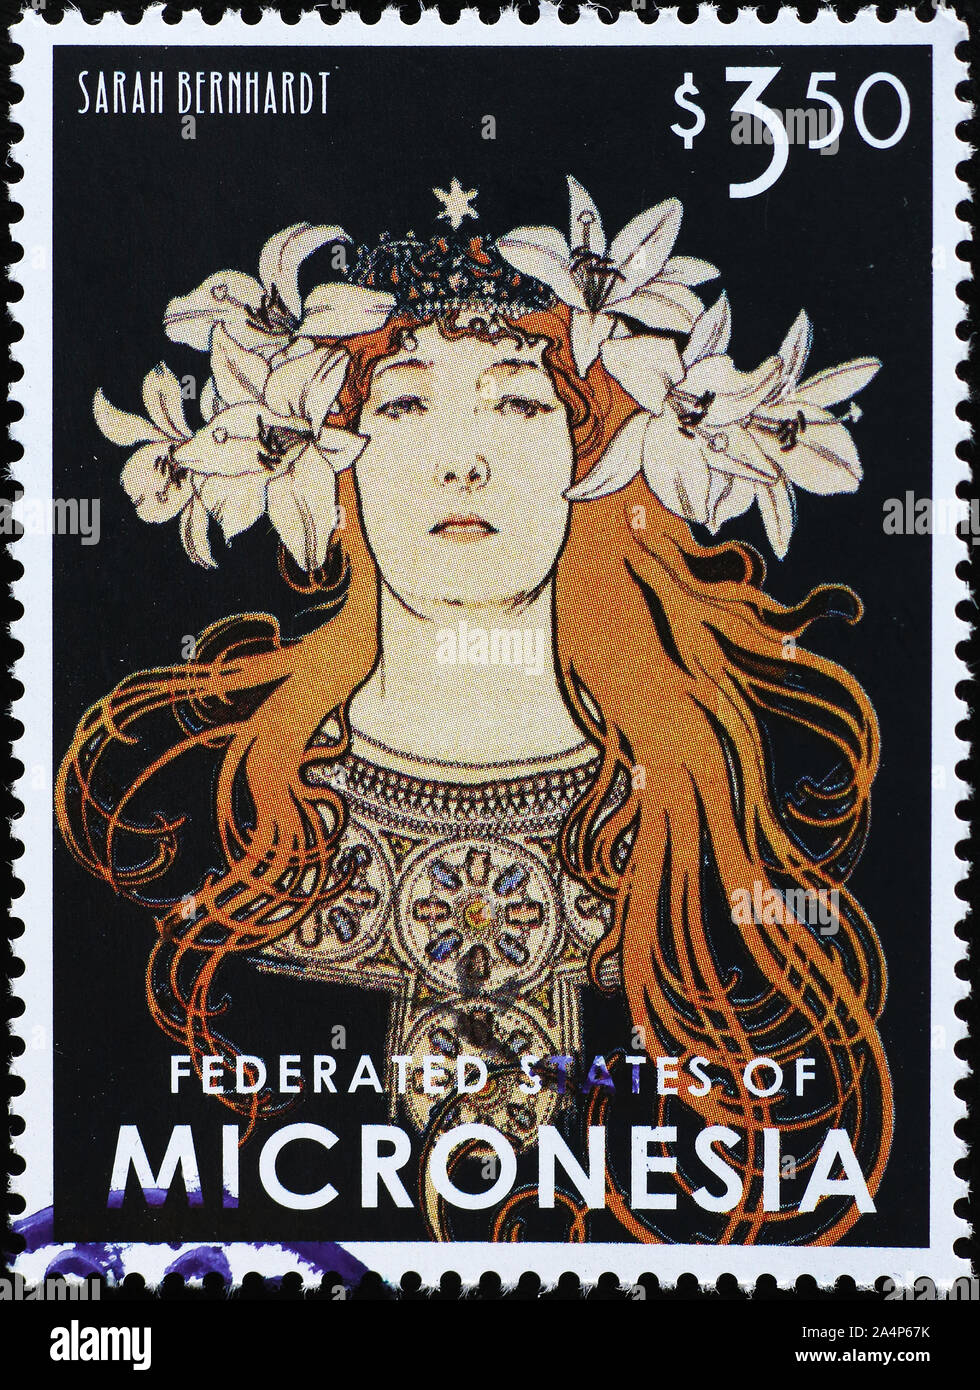 Sarah Benhardt von Alphonse Mucha auf Briefmarke von Mikronesien Stockfoto